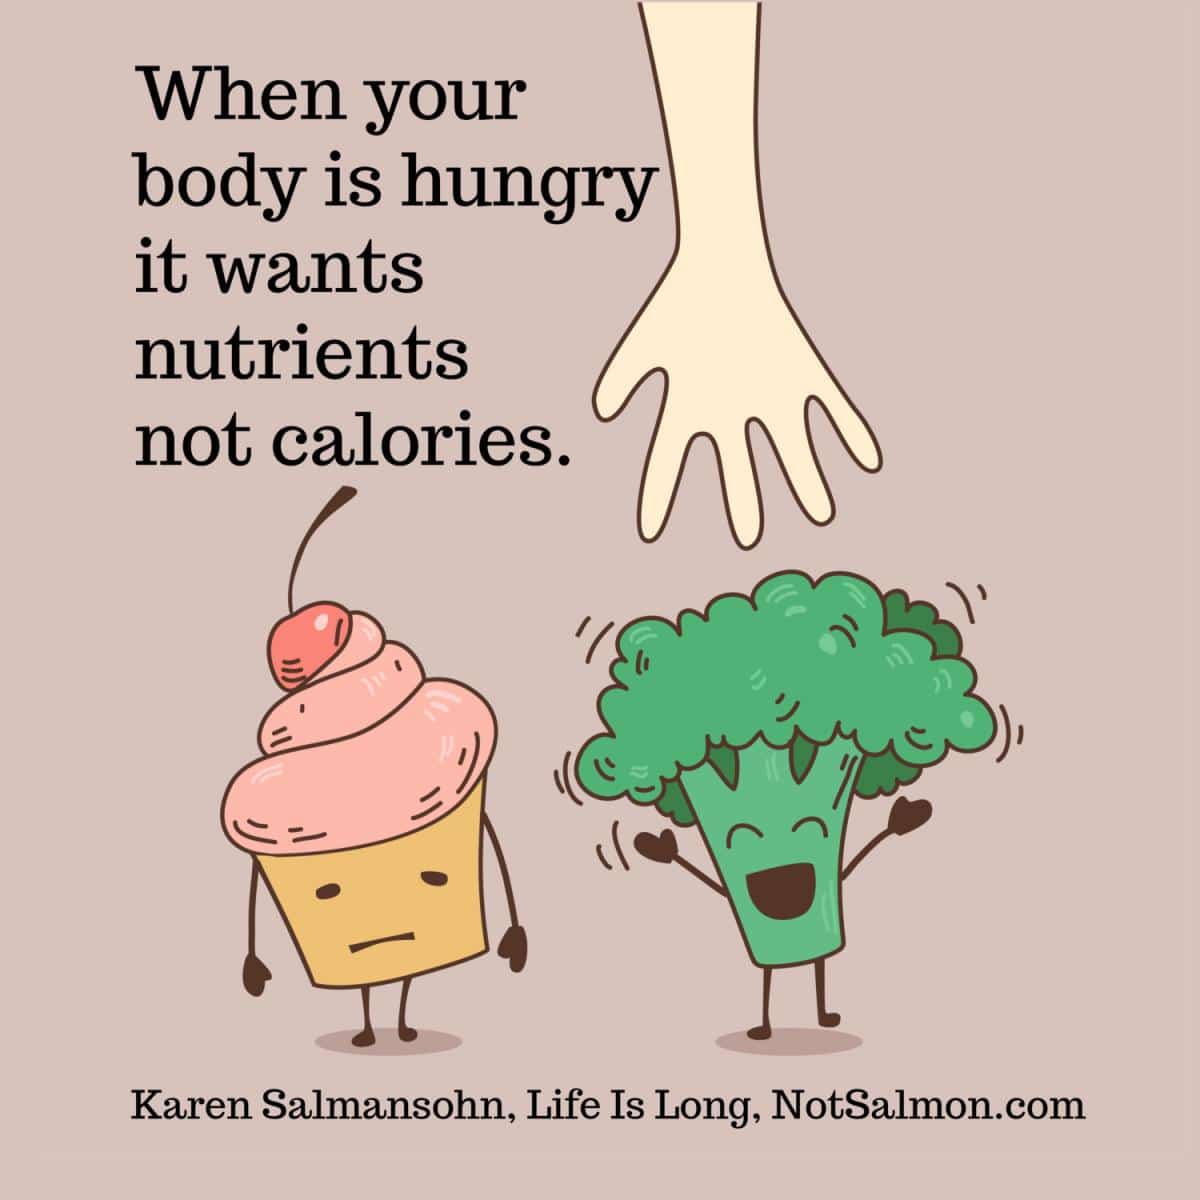 count nutrients not calories